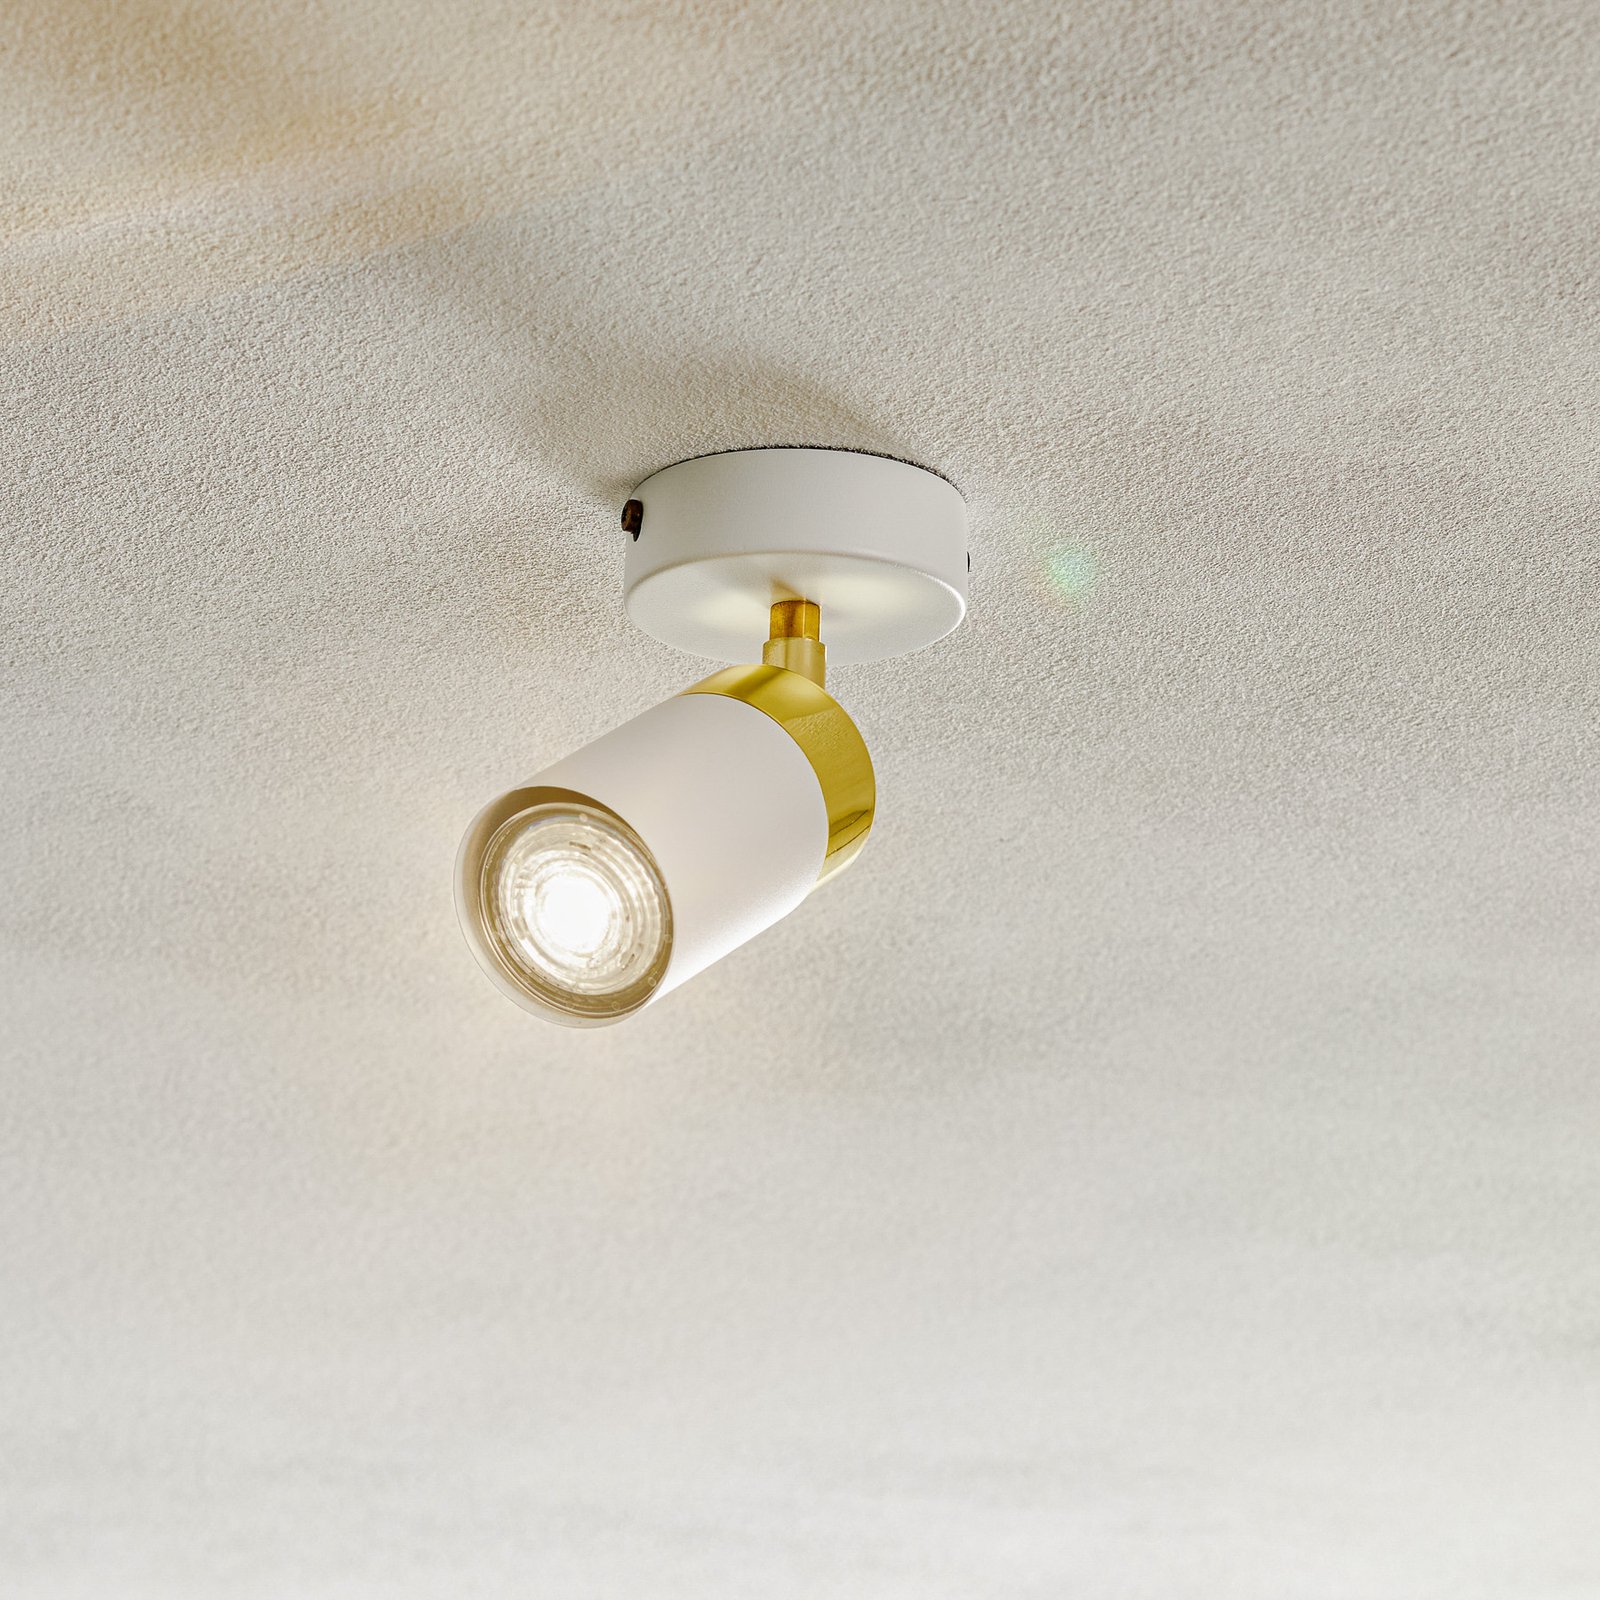 Joker ceiling spotlight, white/gold, one-bulb